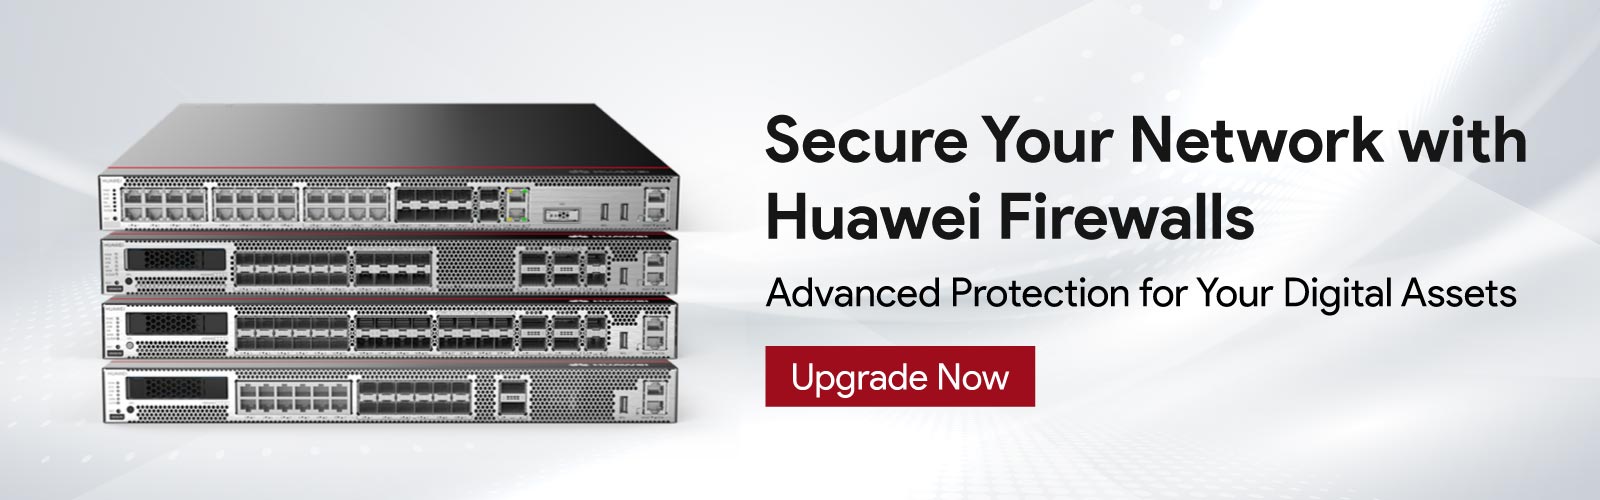 Huawei-Firewalls